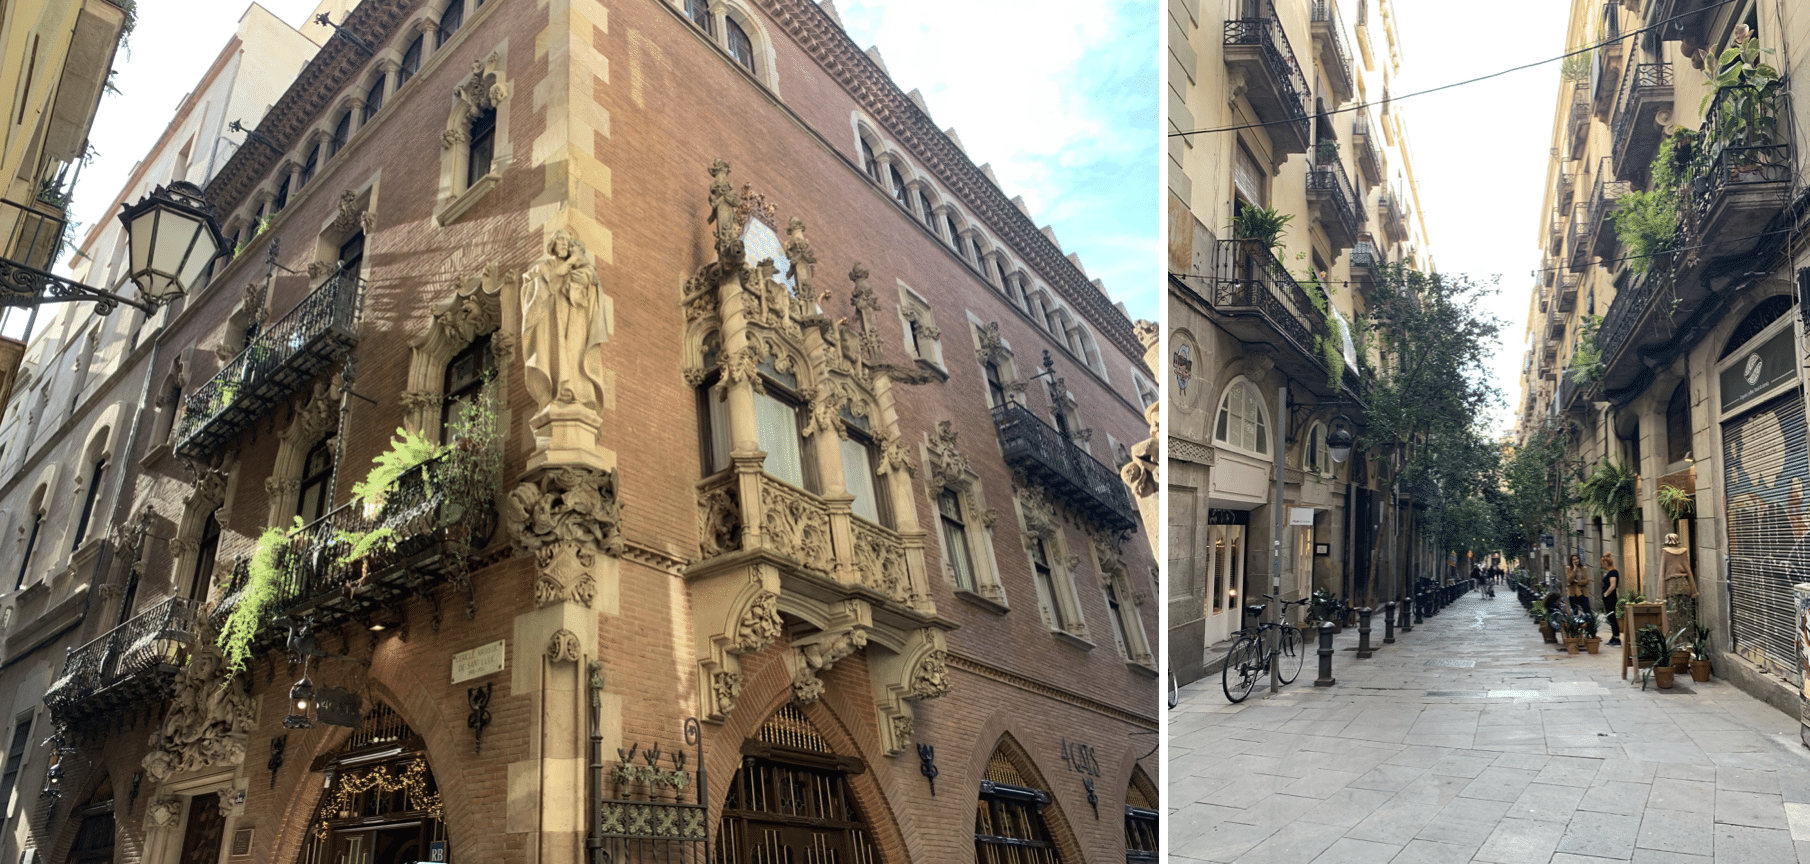 ruelles medievales dans la vieille ville de barcelone